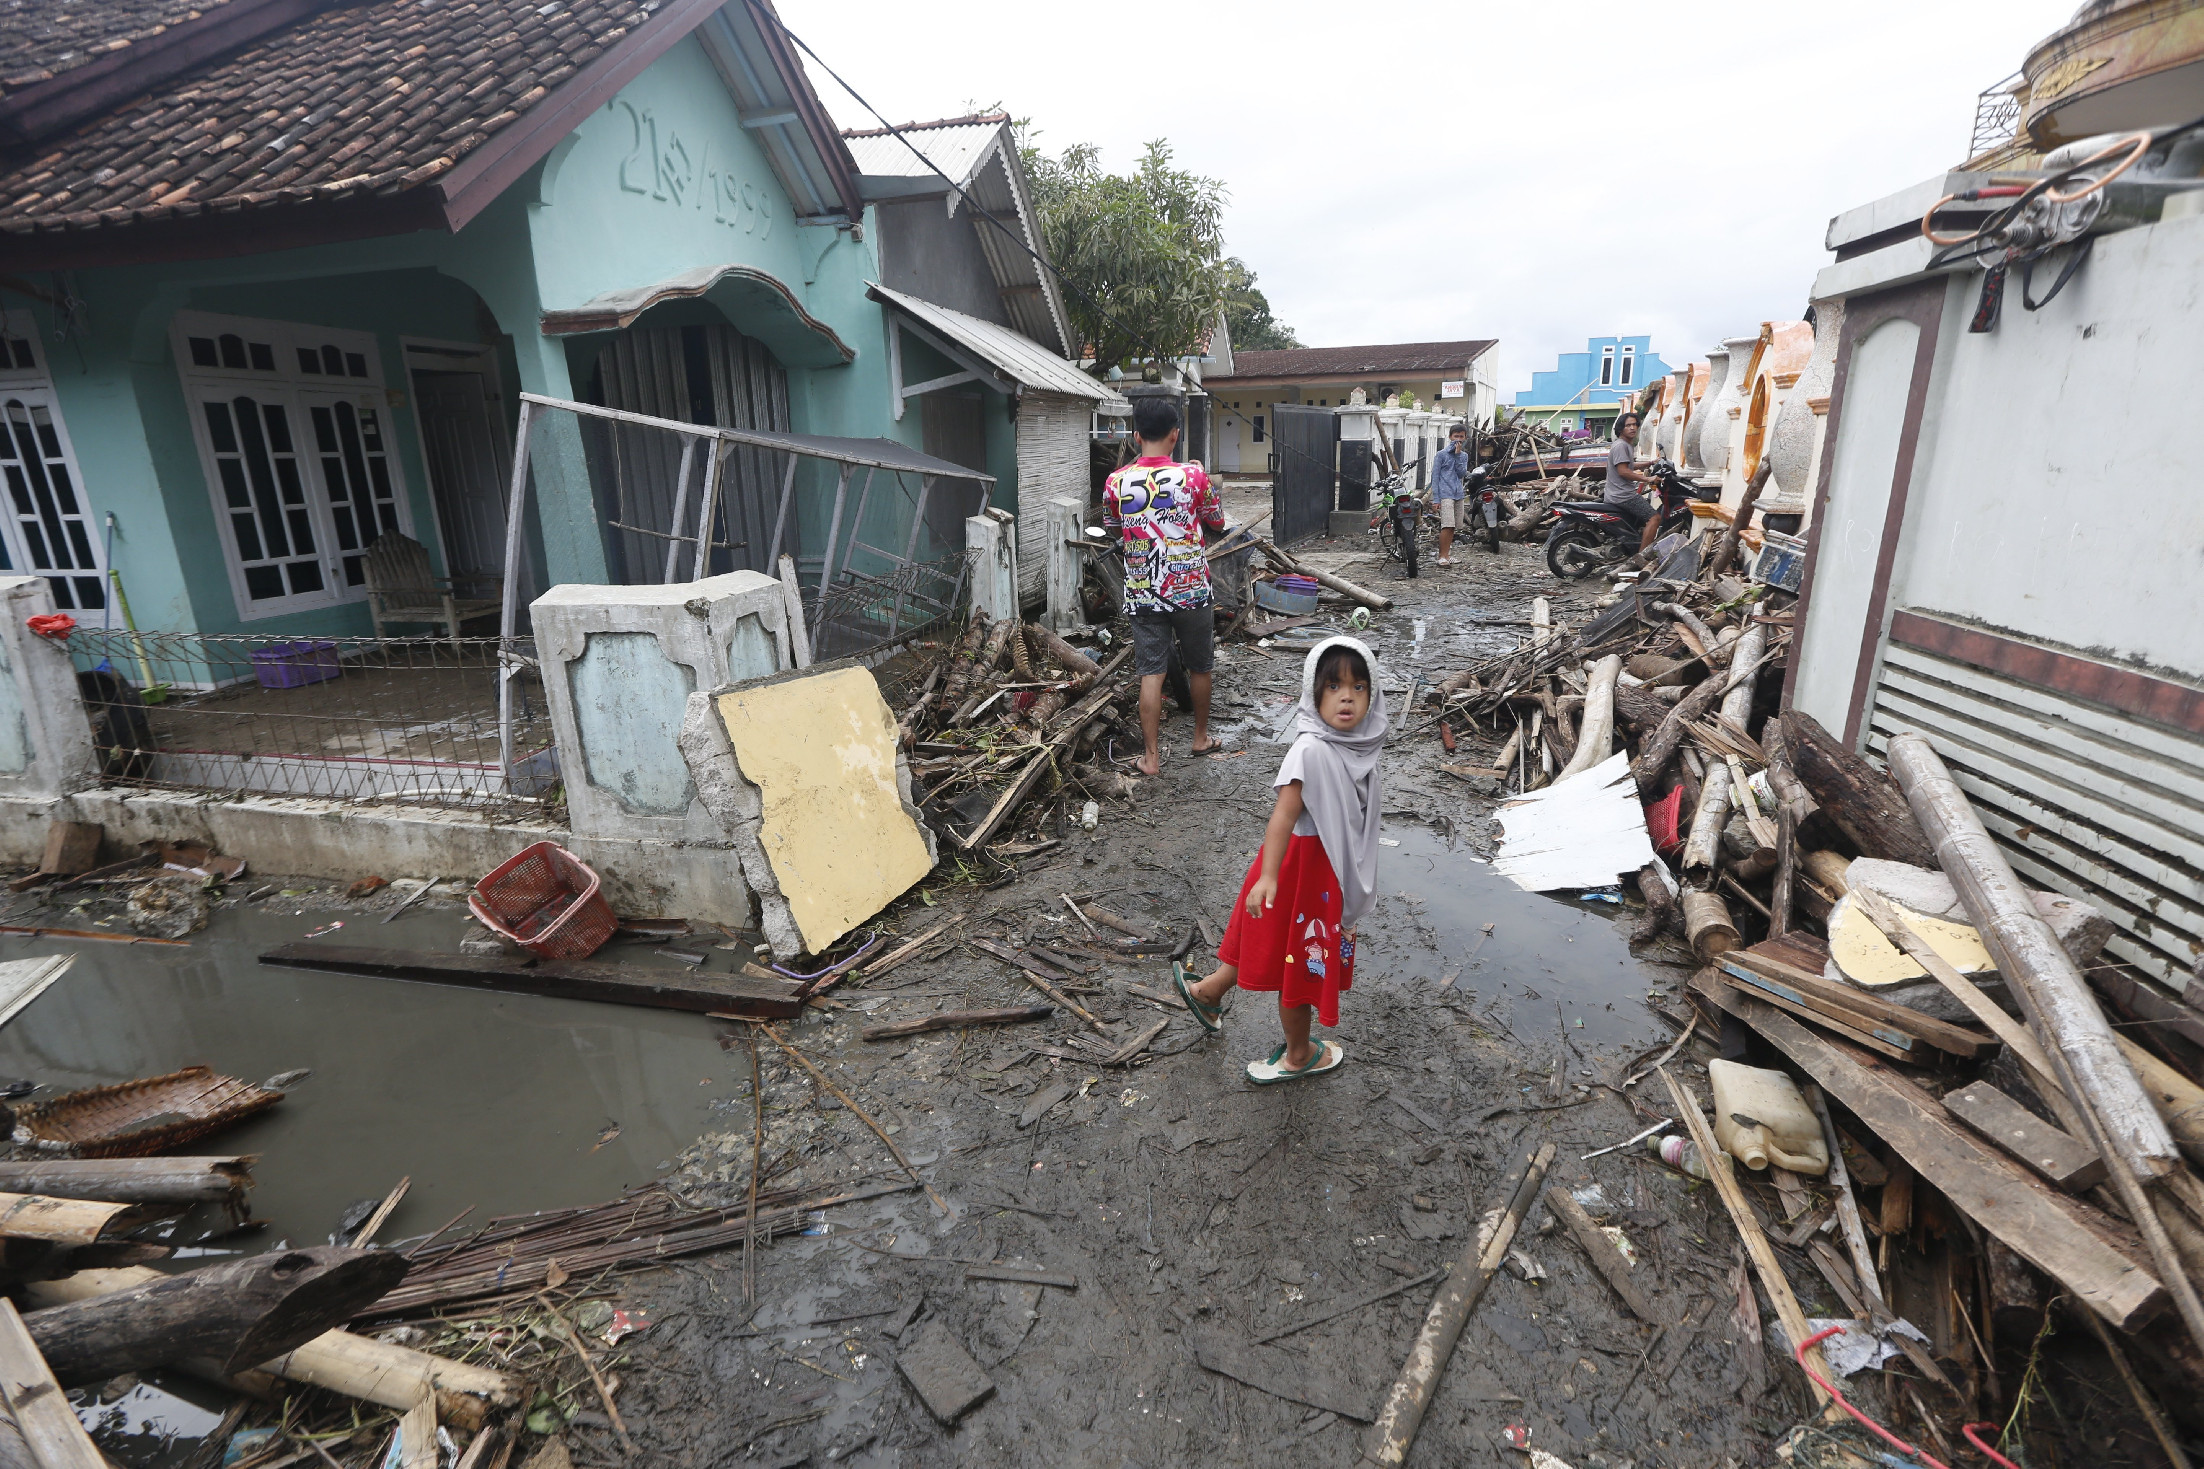 Akkora földrengés volt Indonéziában, hogy elrendelték a cunamiriadót